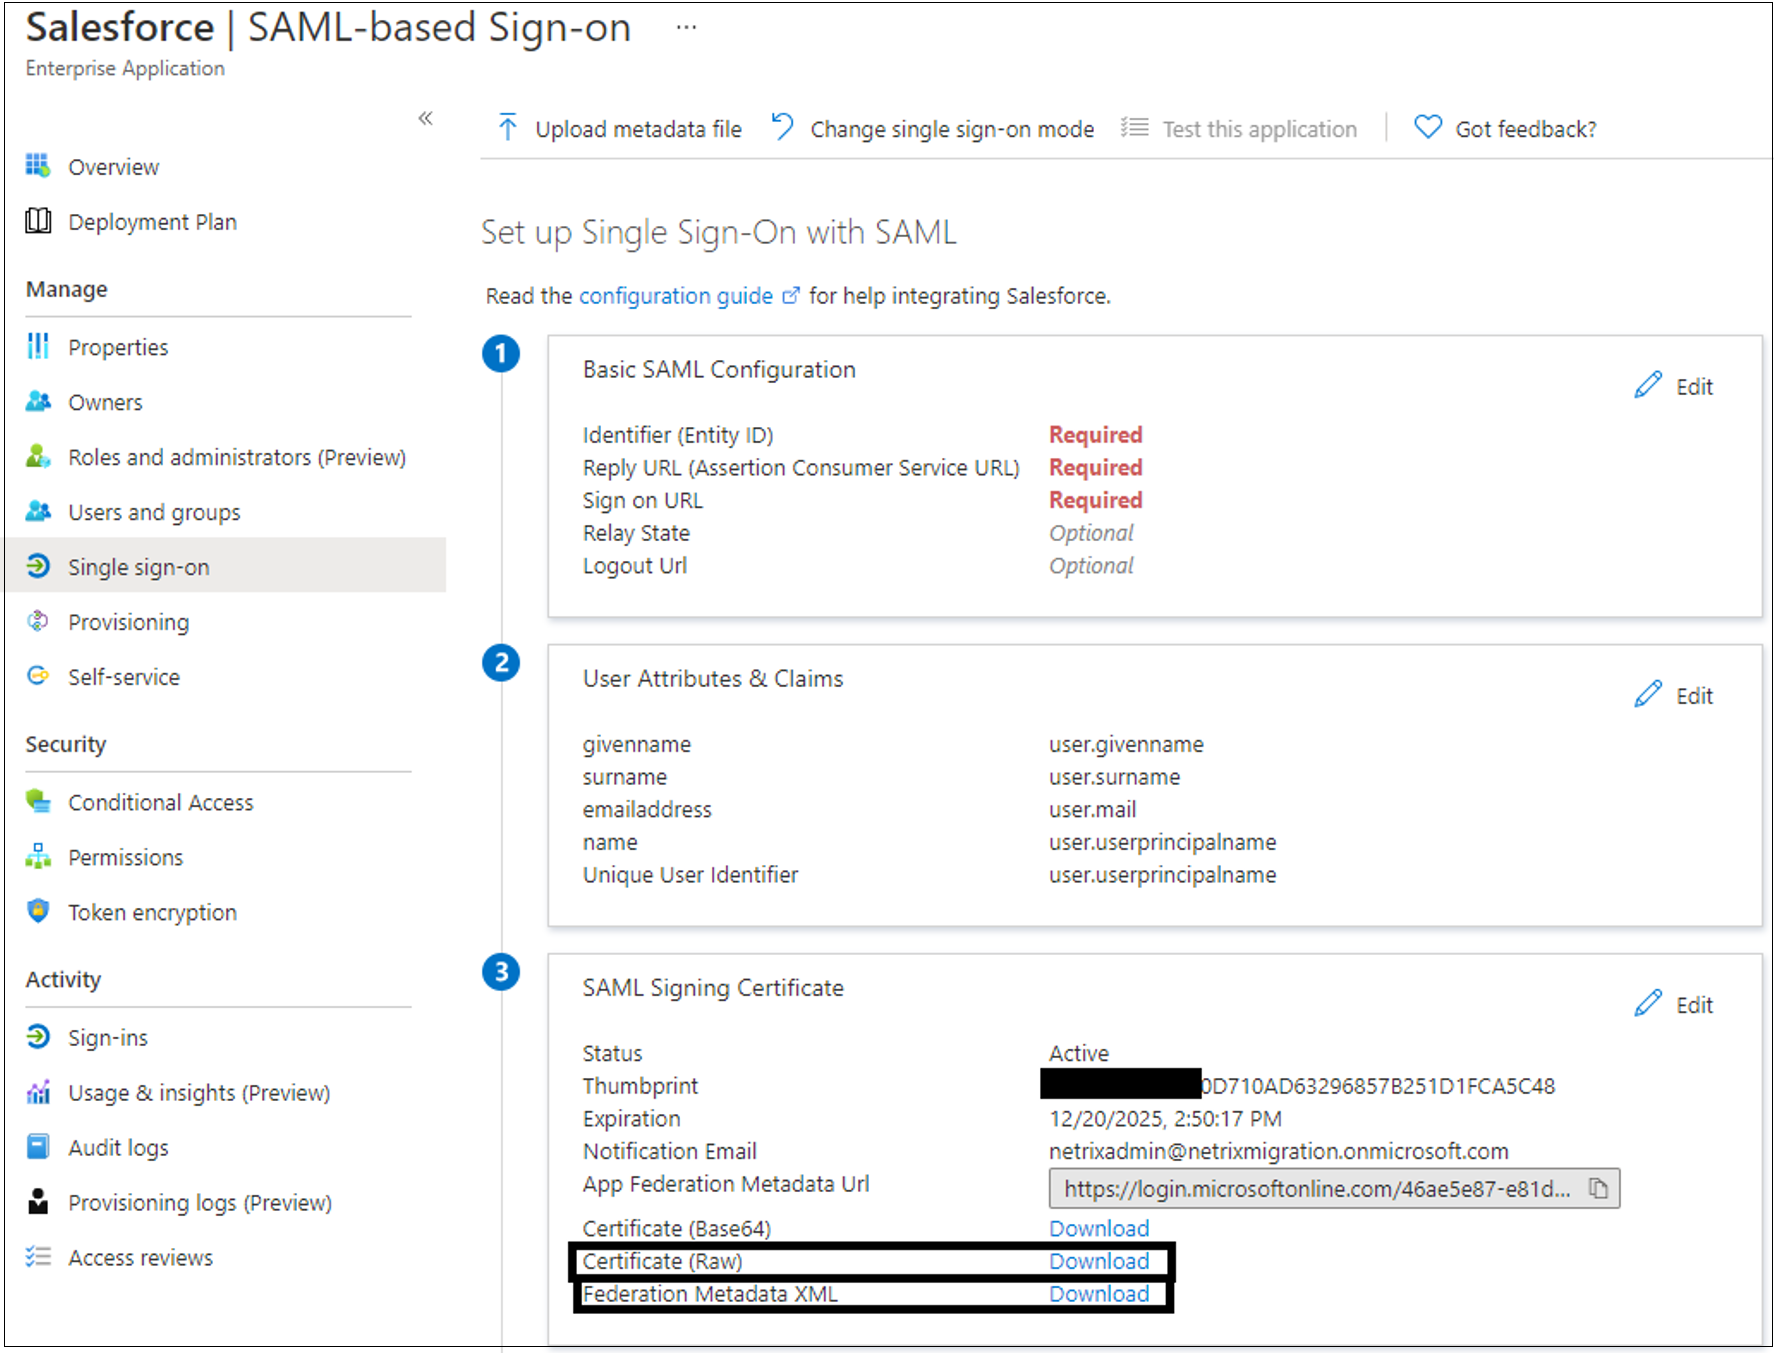 Capture d’écran des entrées XML de certificat (brut) et de métadonnées de fédération sous Certificat de signature SAML.